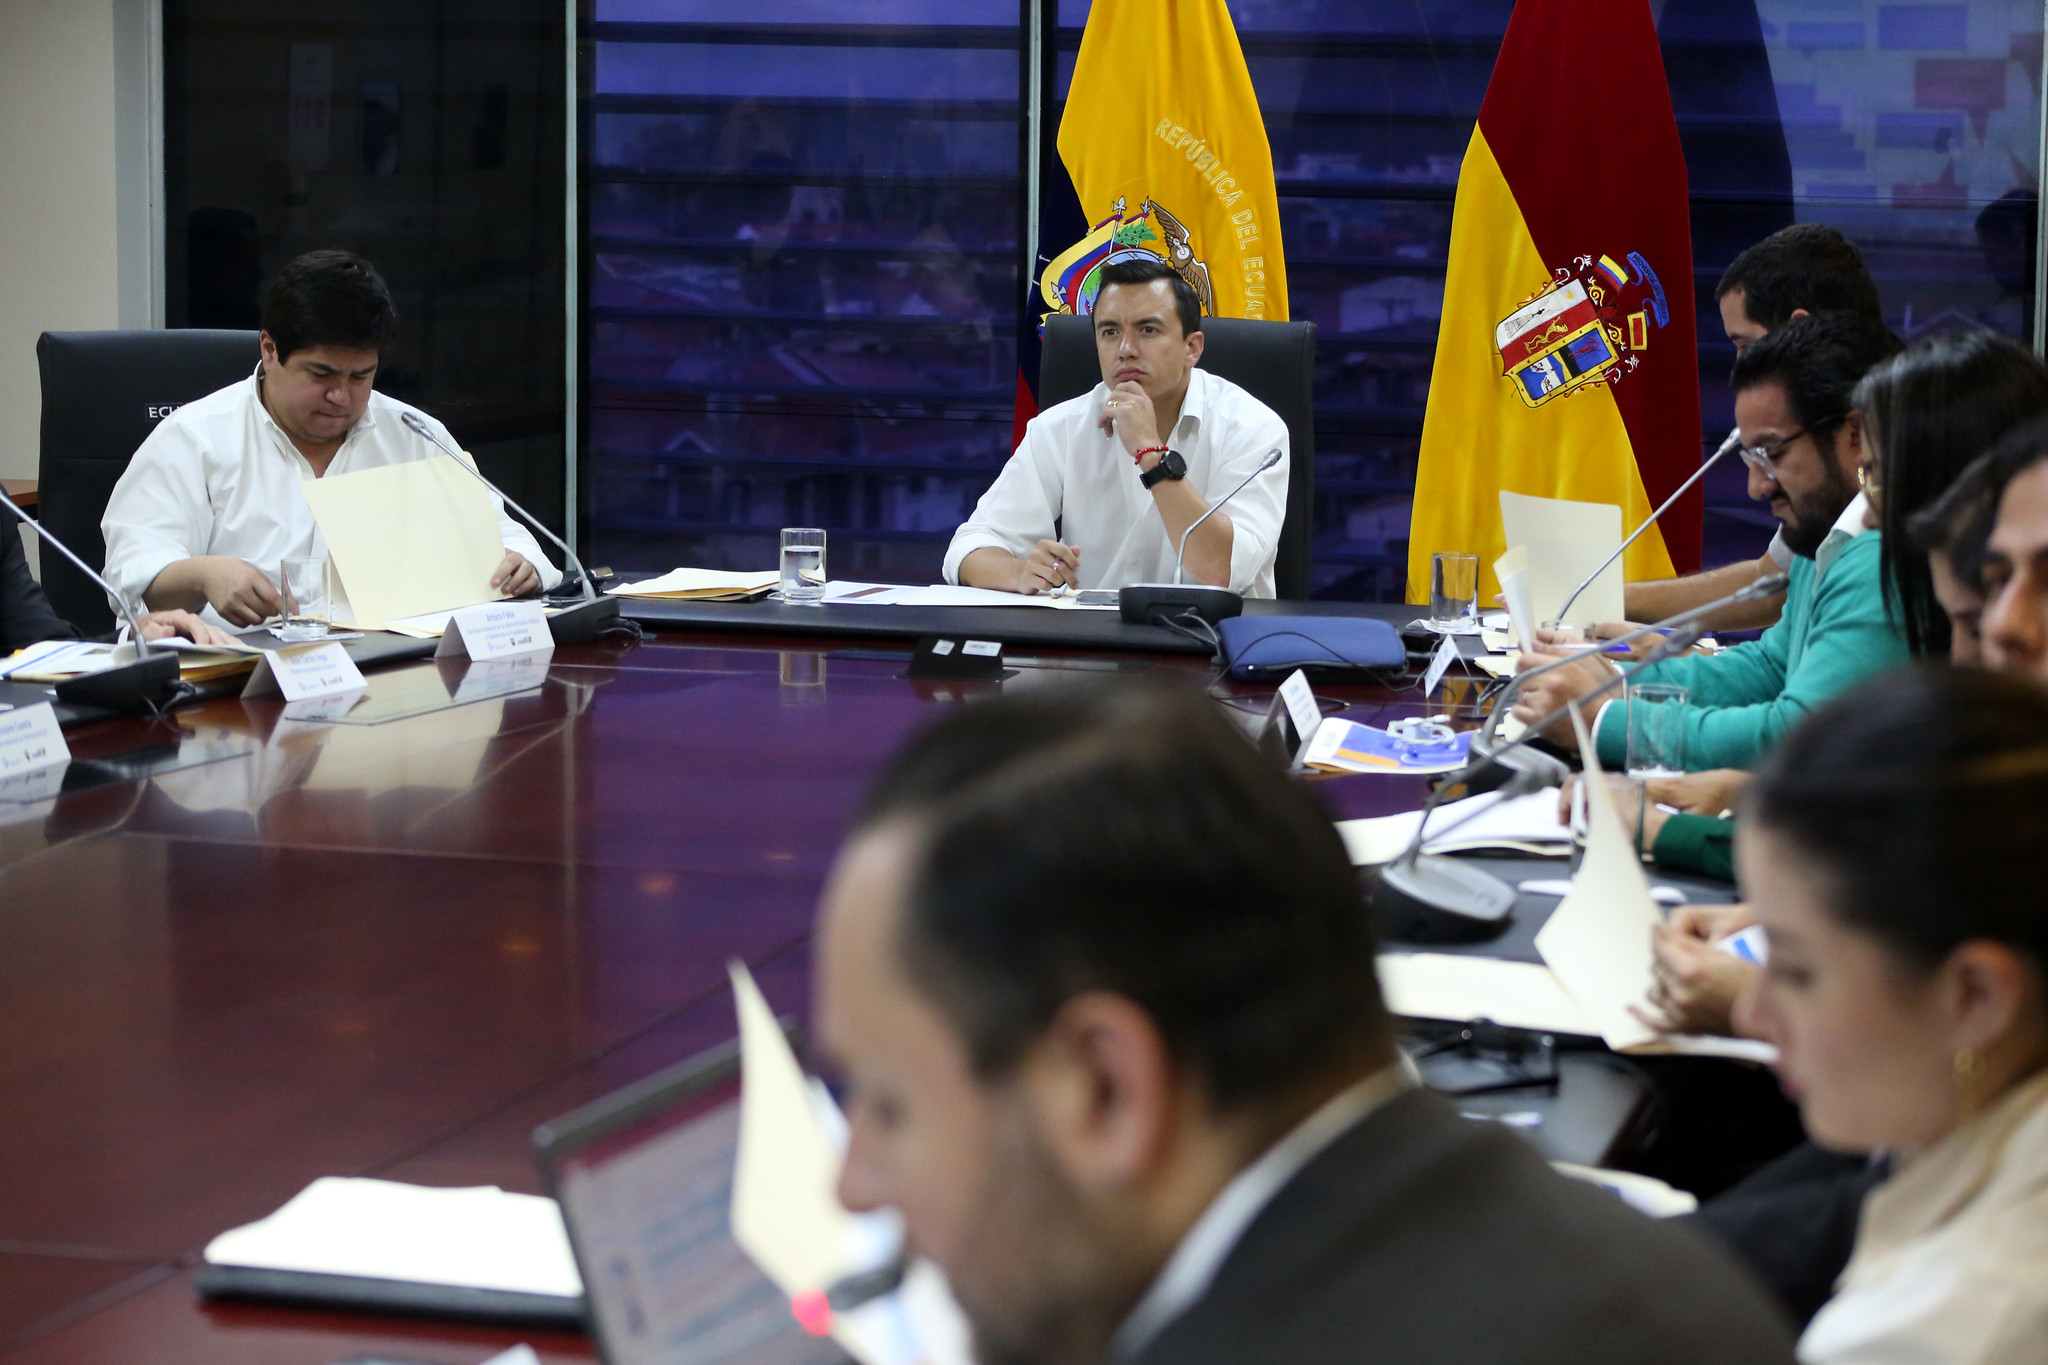 EMPLEADOS. Advierten que debe ser difícil para los actuales ministros “contradecir” al presidente Noboa. Foto: Presidencia